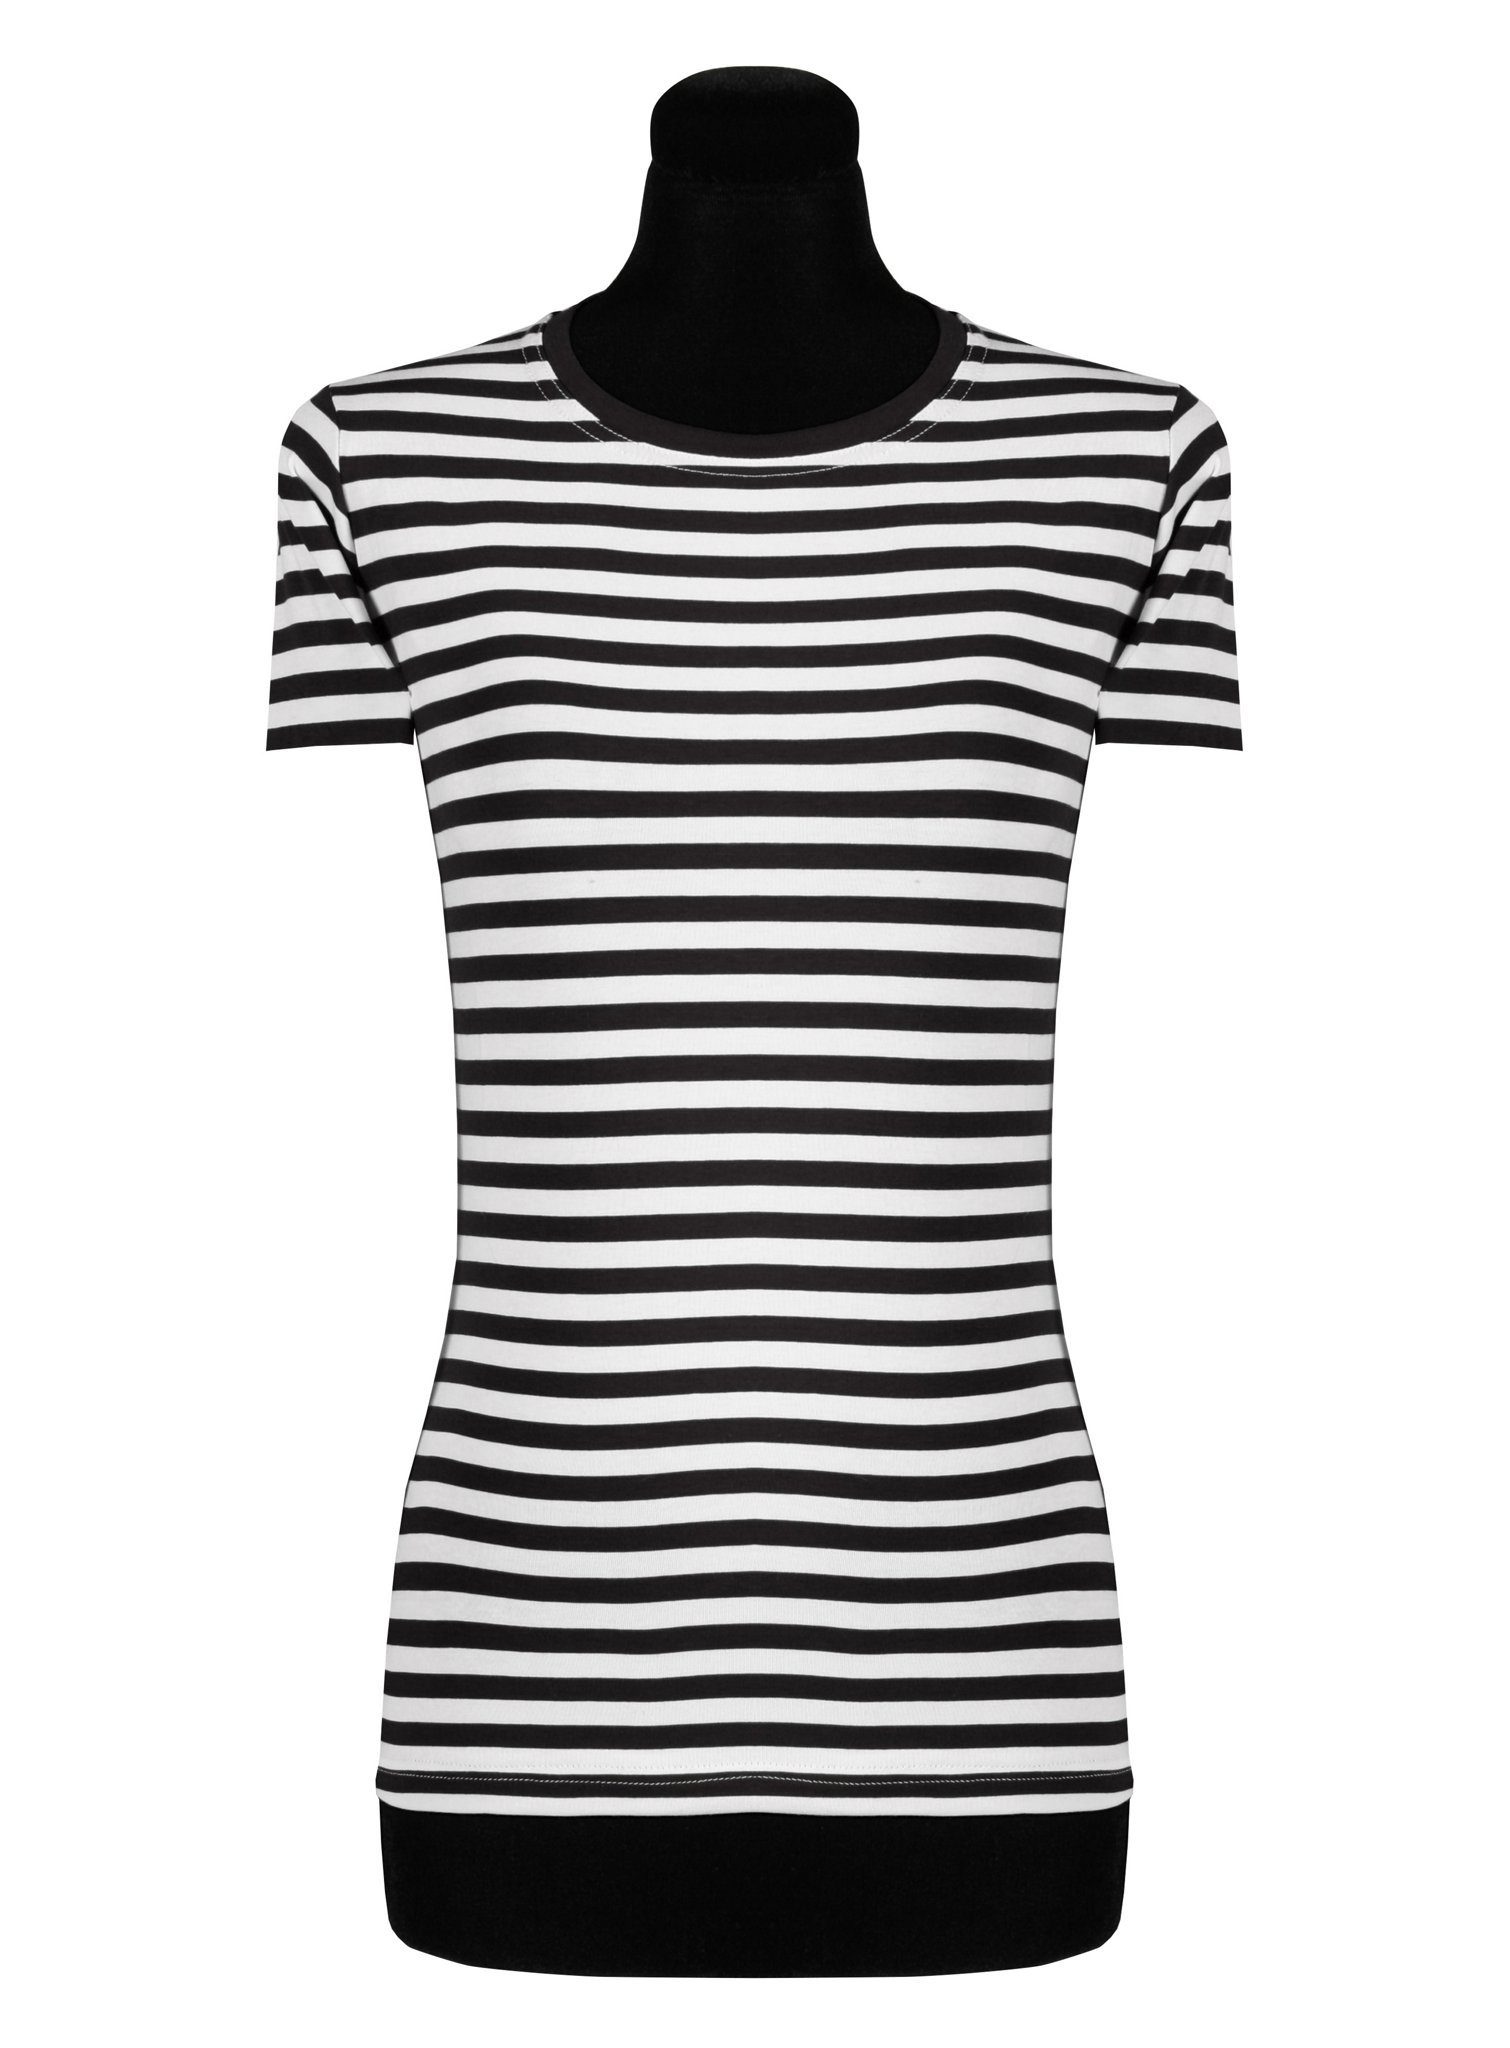 thetru T-Shirt Damen Ringelshirt kurzarm schwarz-weiß – alltagsta Gestreiftes Shirt für Karneval und Alltag – qualitativ entsprechend